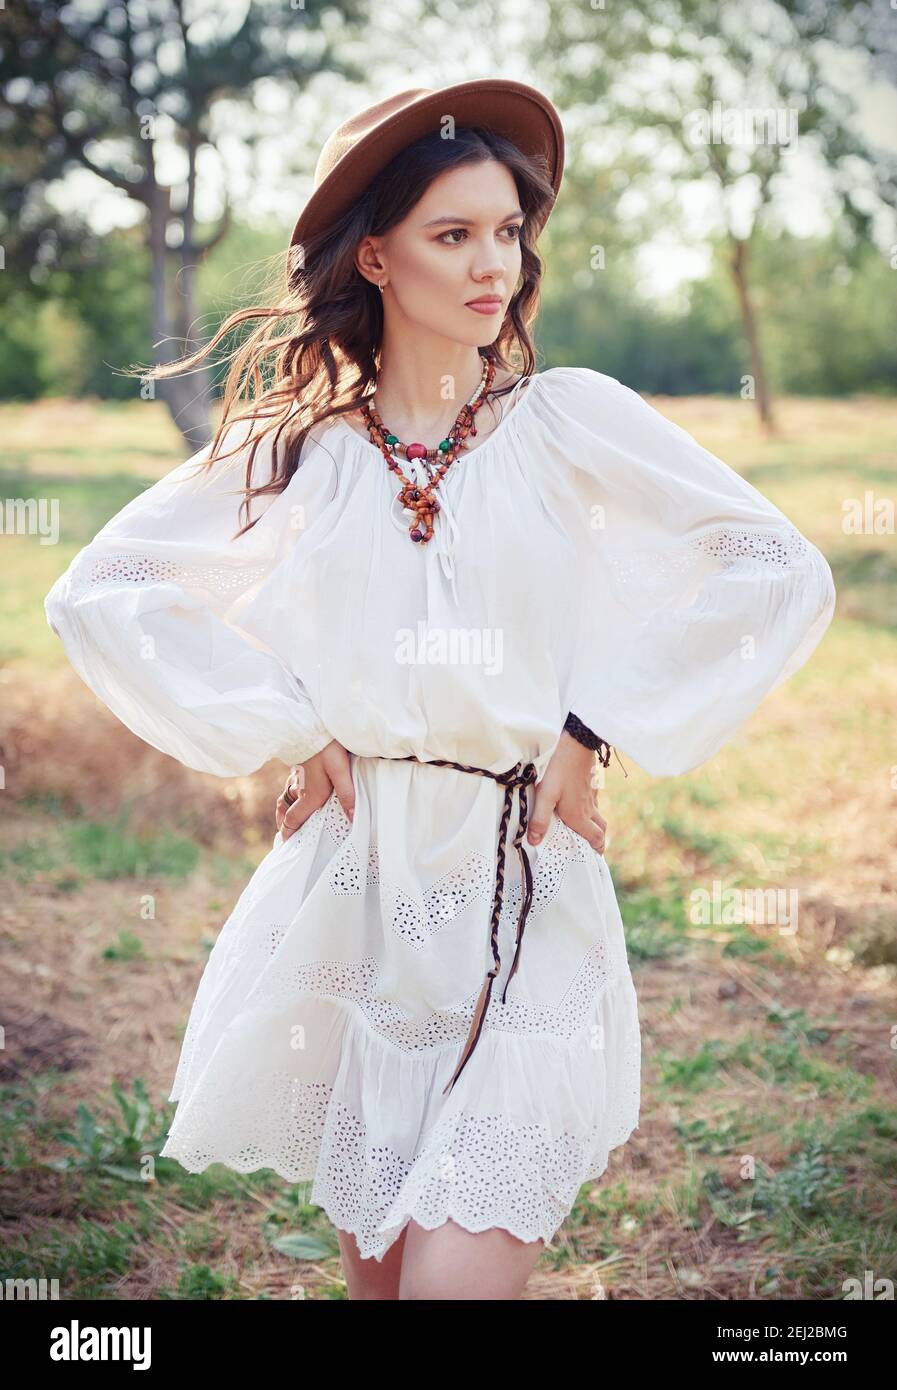 Outdoor-Mode: Das schöne junge Boho (Hippie) Mädchen in Hain (Wald).  Porträt von süßen Hippie Frau in weißem Kleid und Hut Stockfotografie -  Alamy